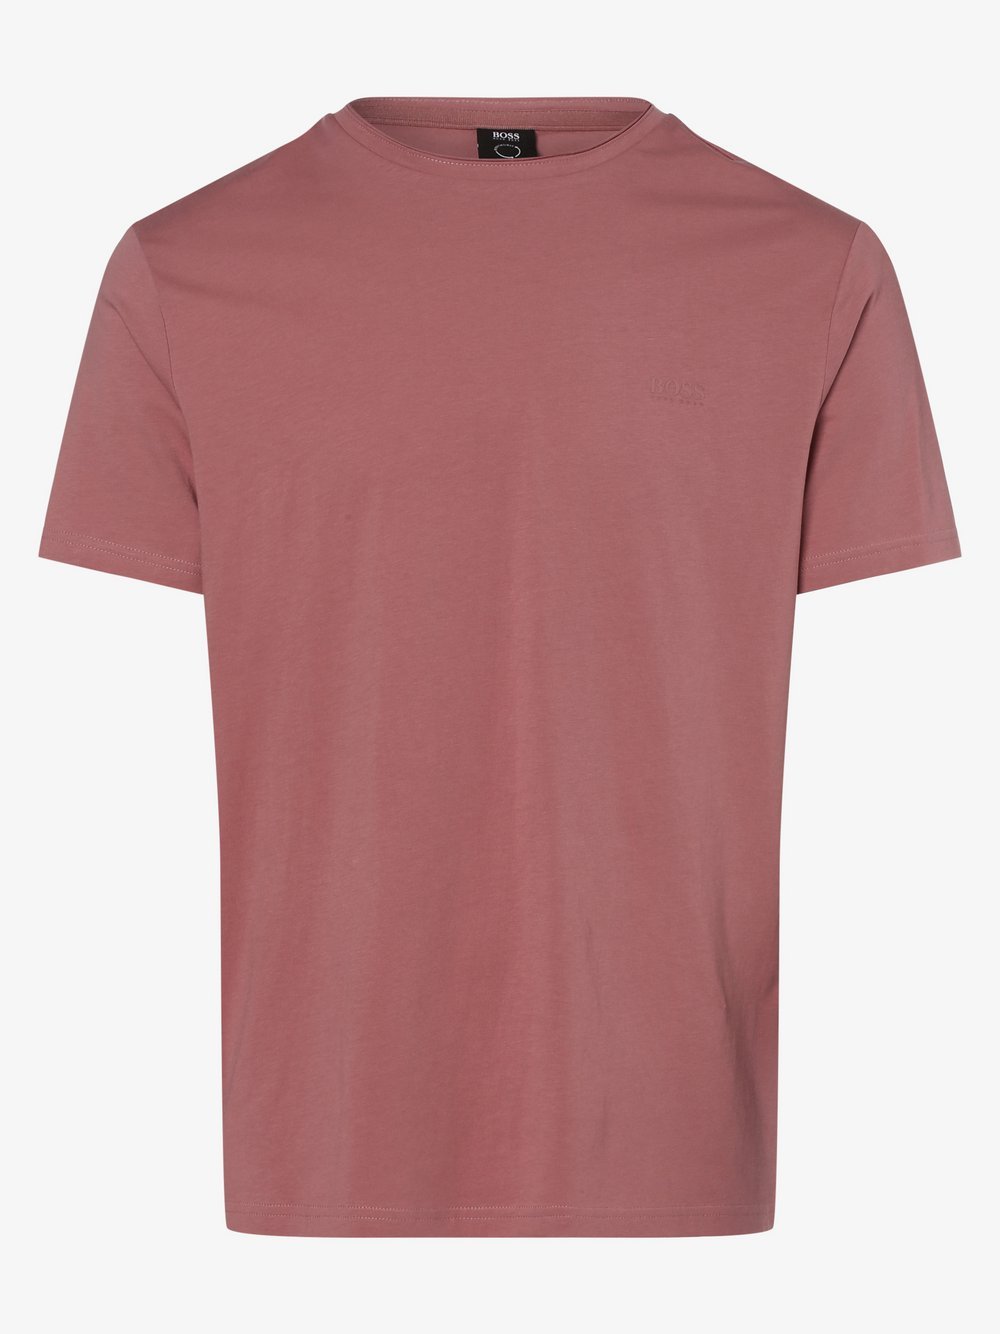 BOSS Casual - T-shirt męski – Trust, różowy